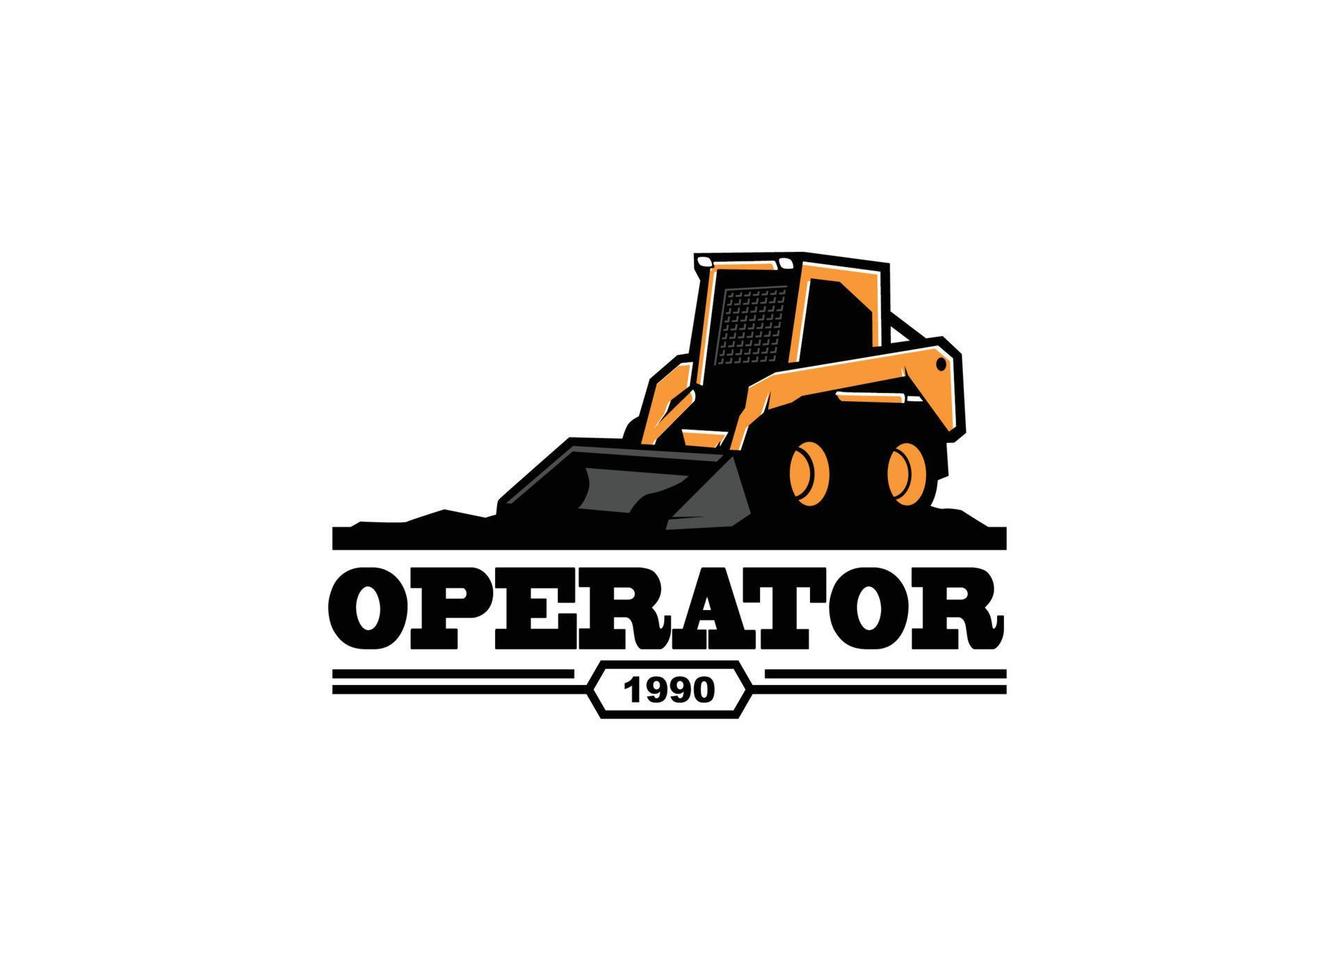 Kompaktlader Land Clearing Logo Vektor für Bauunternehmen. Schwermaschinenschablonen-Vektorillustration für Ihre Marke.